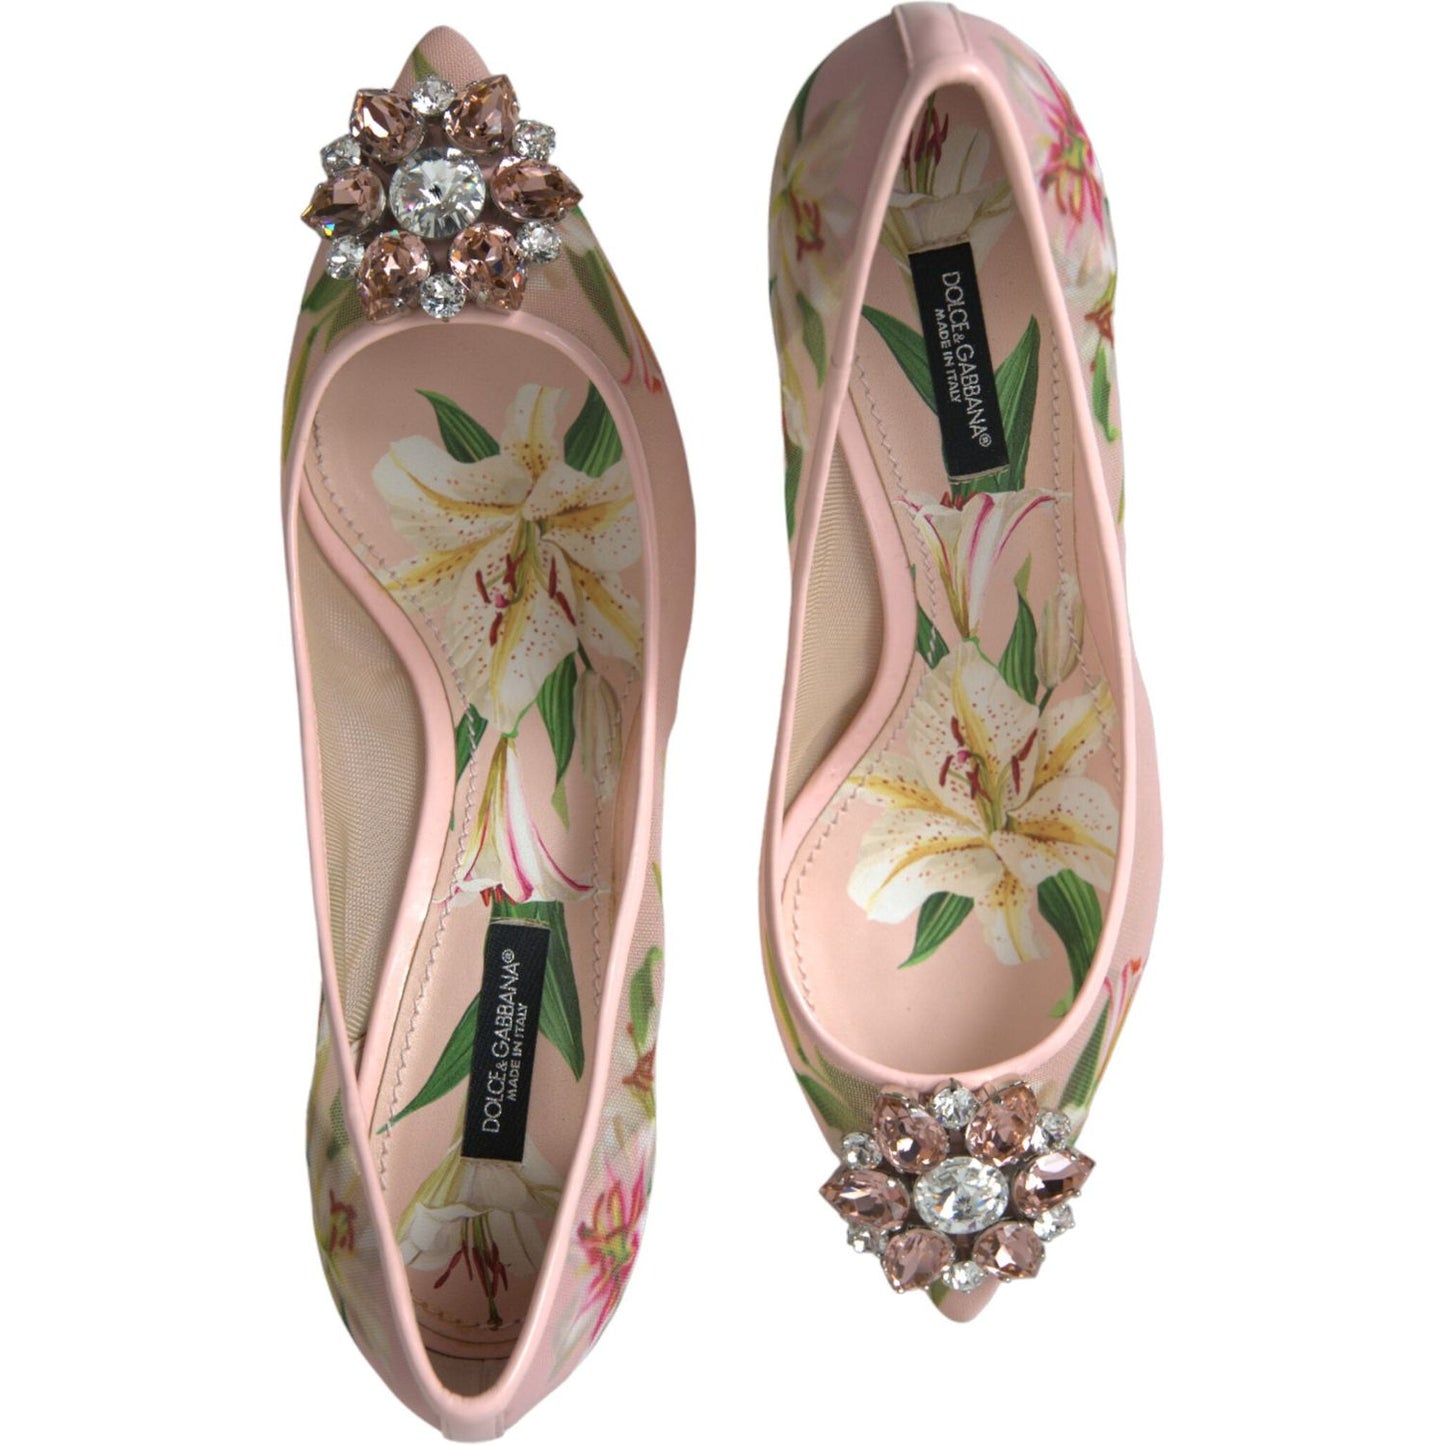 Dolce & Gabbana Elegant Pink Floral Crystal Pumps pink-floral-crystal-heels-pumps-shoes